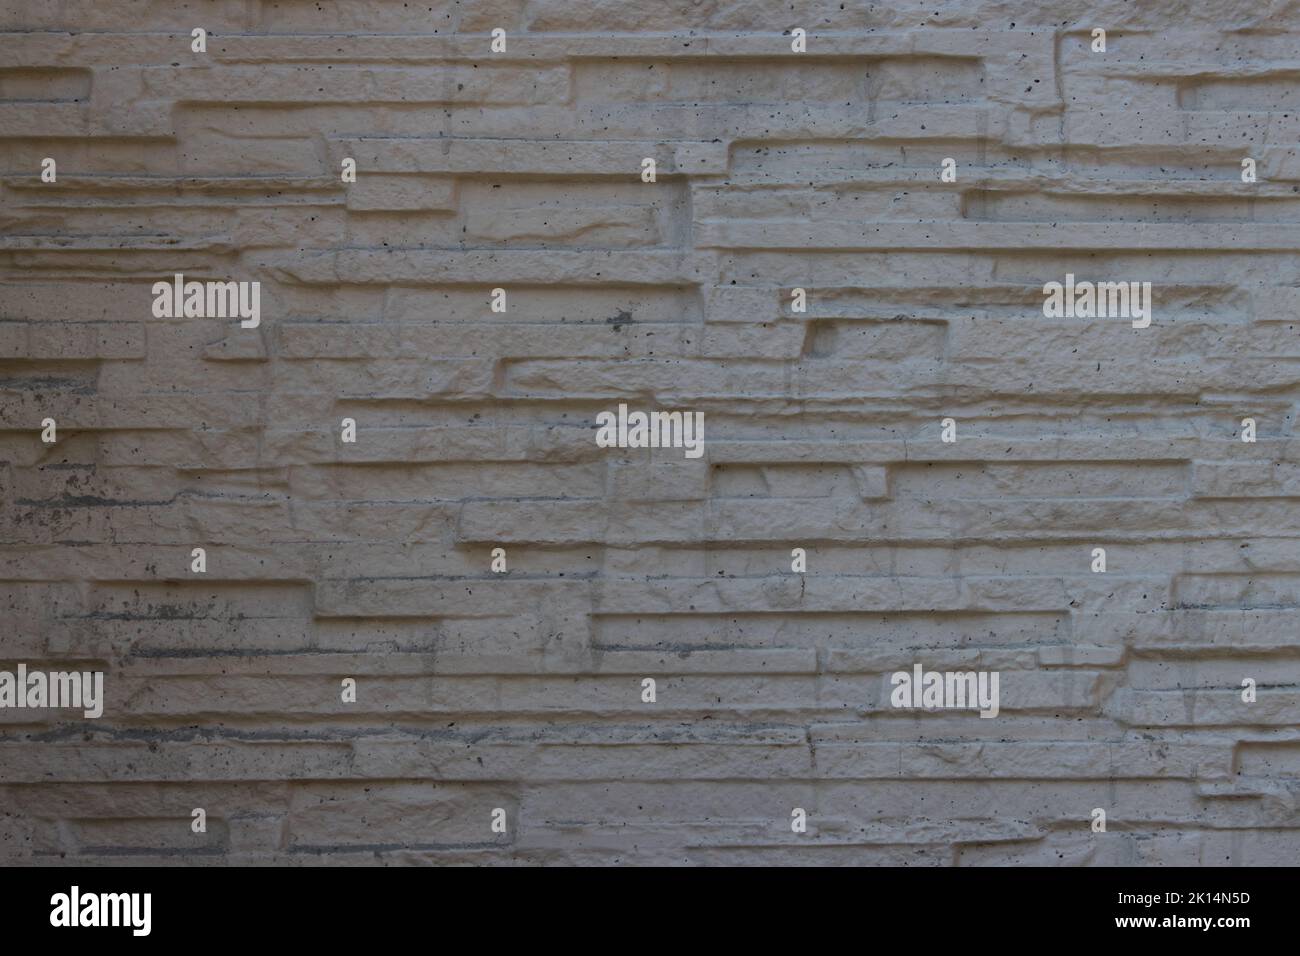 White narrow stone wall background texture Stock Photo